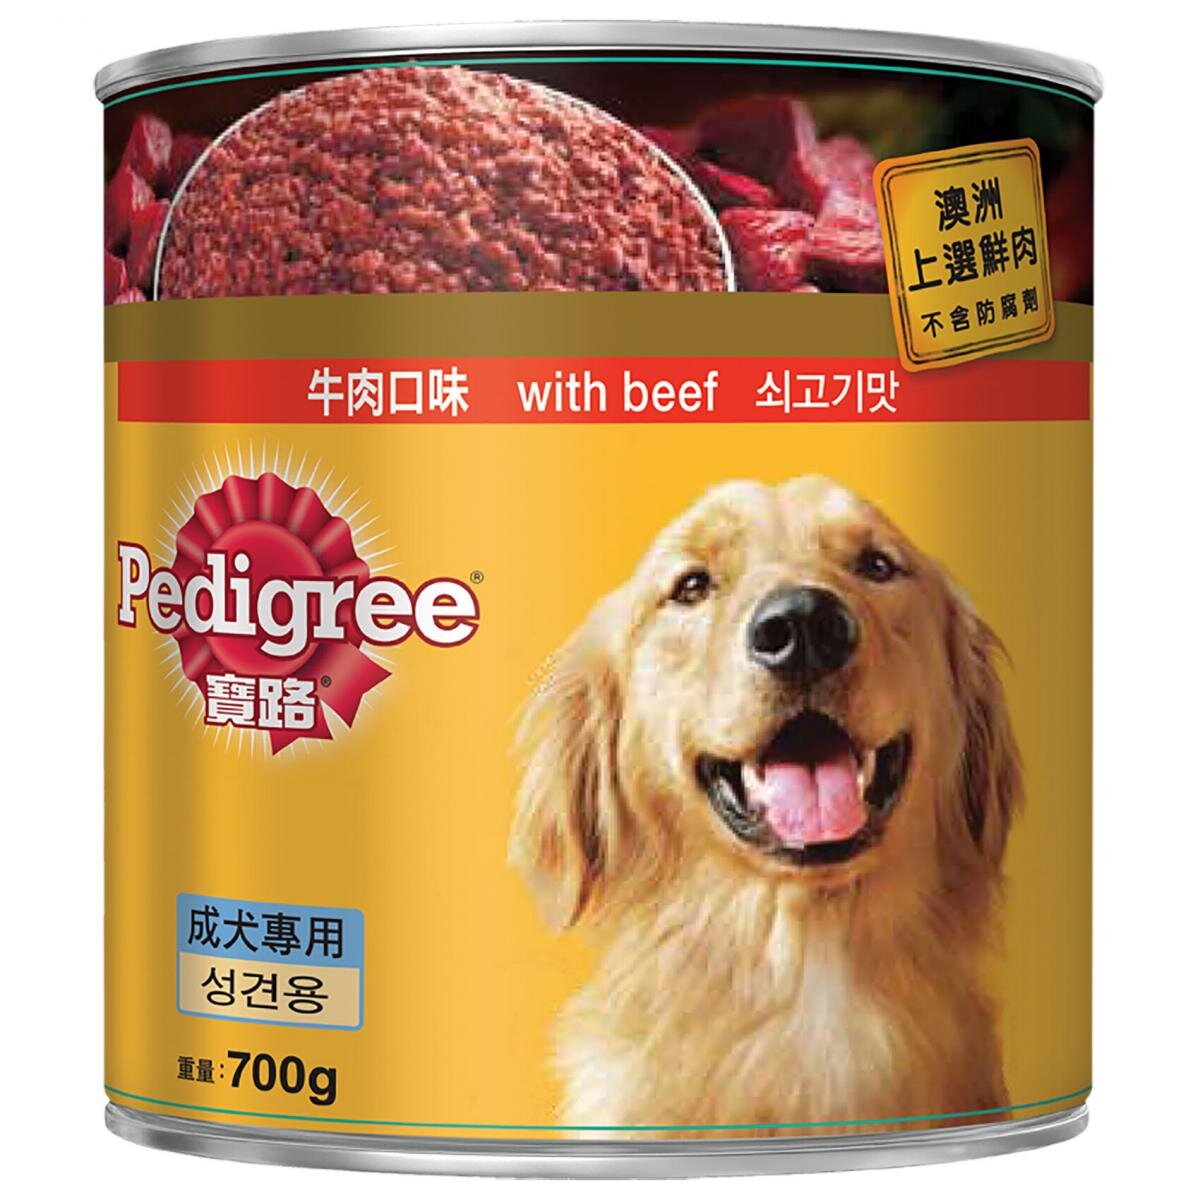 特选澳大利亚 - 宝路 - 狗罐头 -牛肉700克 - 宠物零食狗罐头狗粮